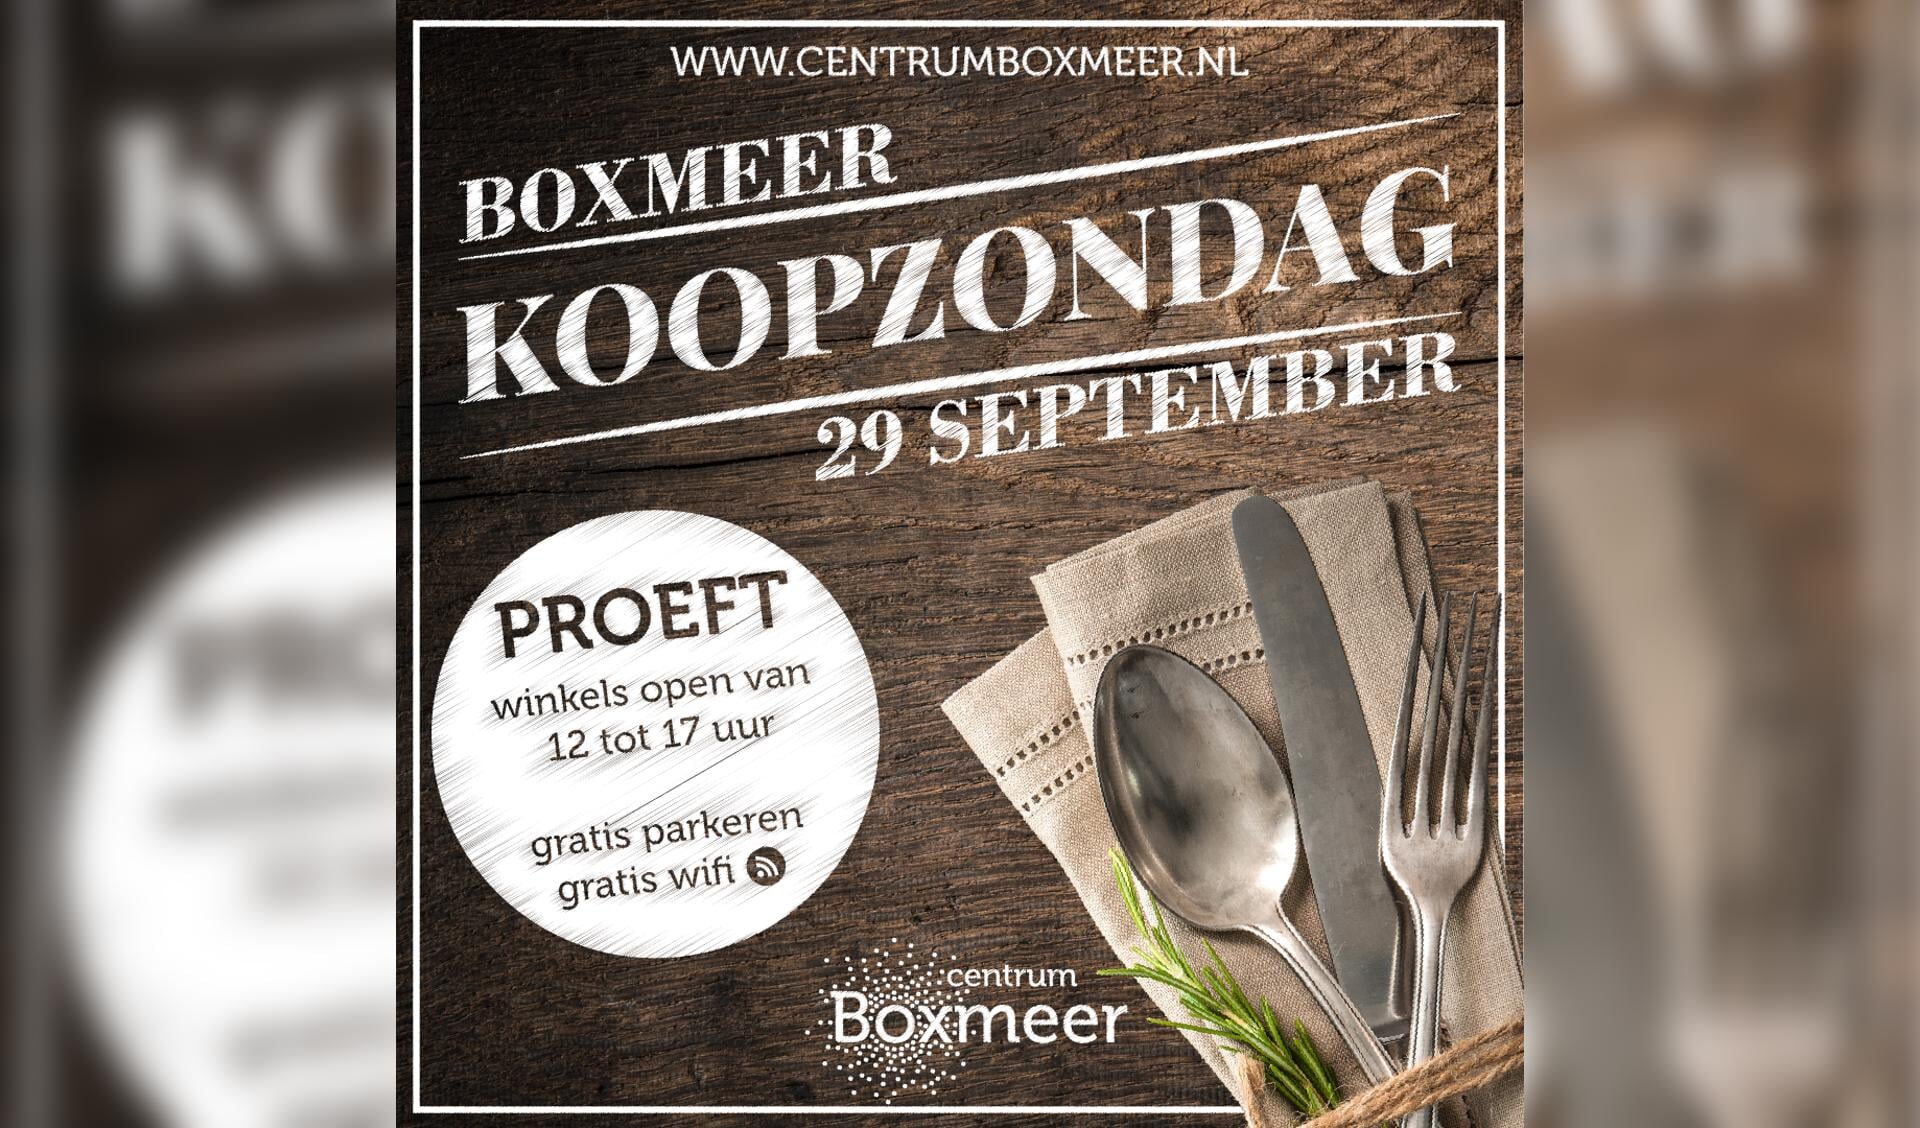 Boxmeer Proeft, op zondag 29 september in het centrum van Boxmeer.